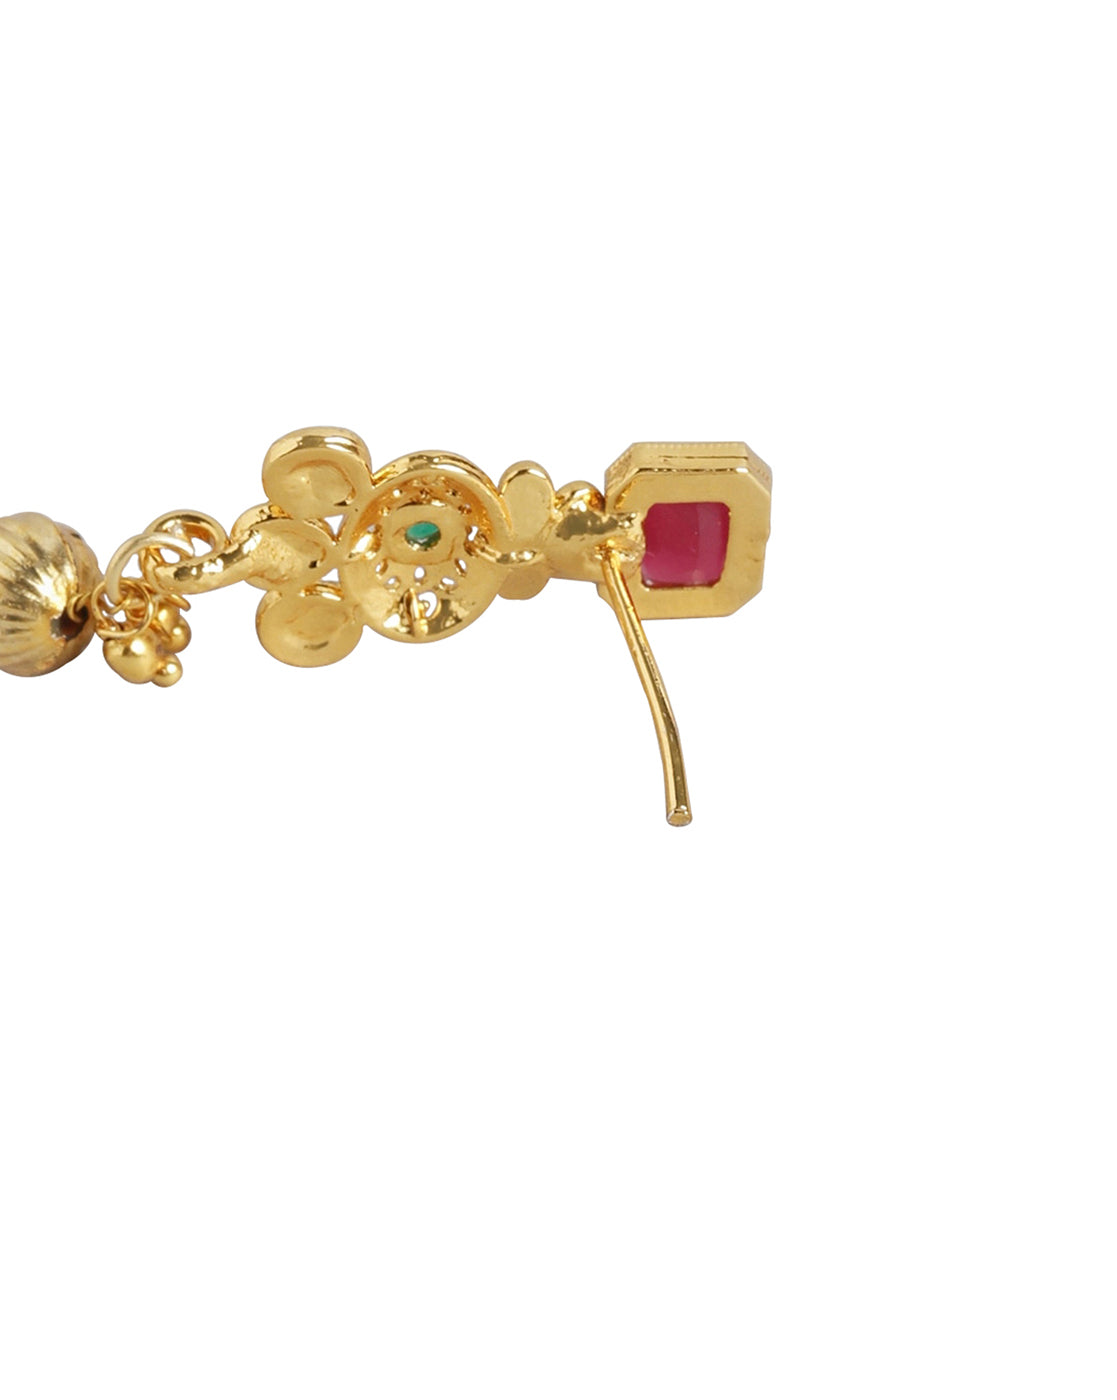 PE8233 Delicate Two Tone Gold Design Pendant Earrings Fancy Chain Set |  JewelSmart.in